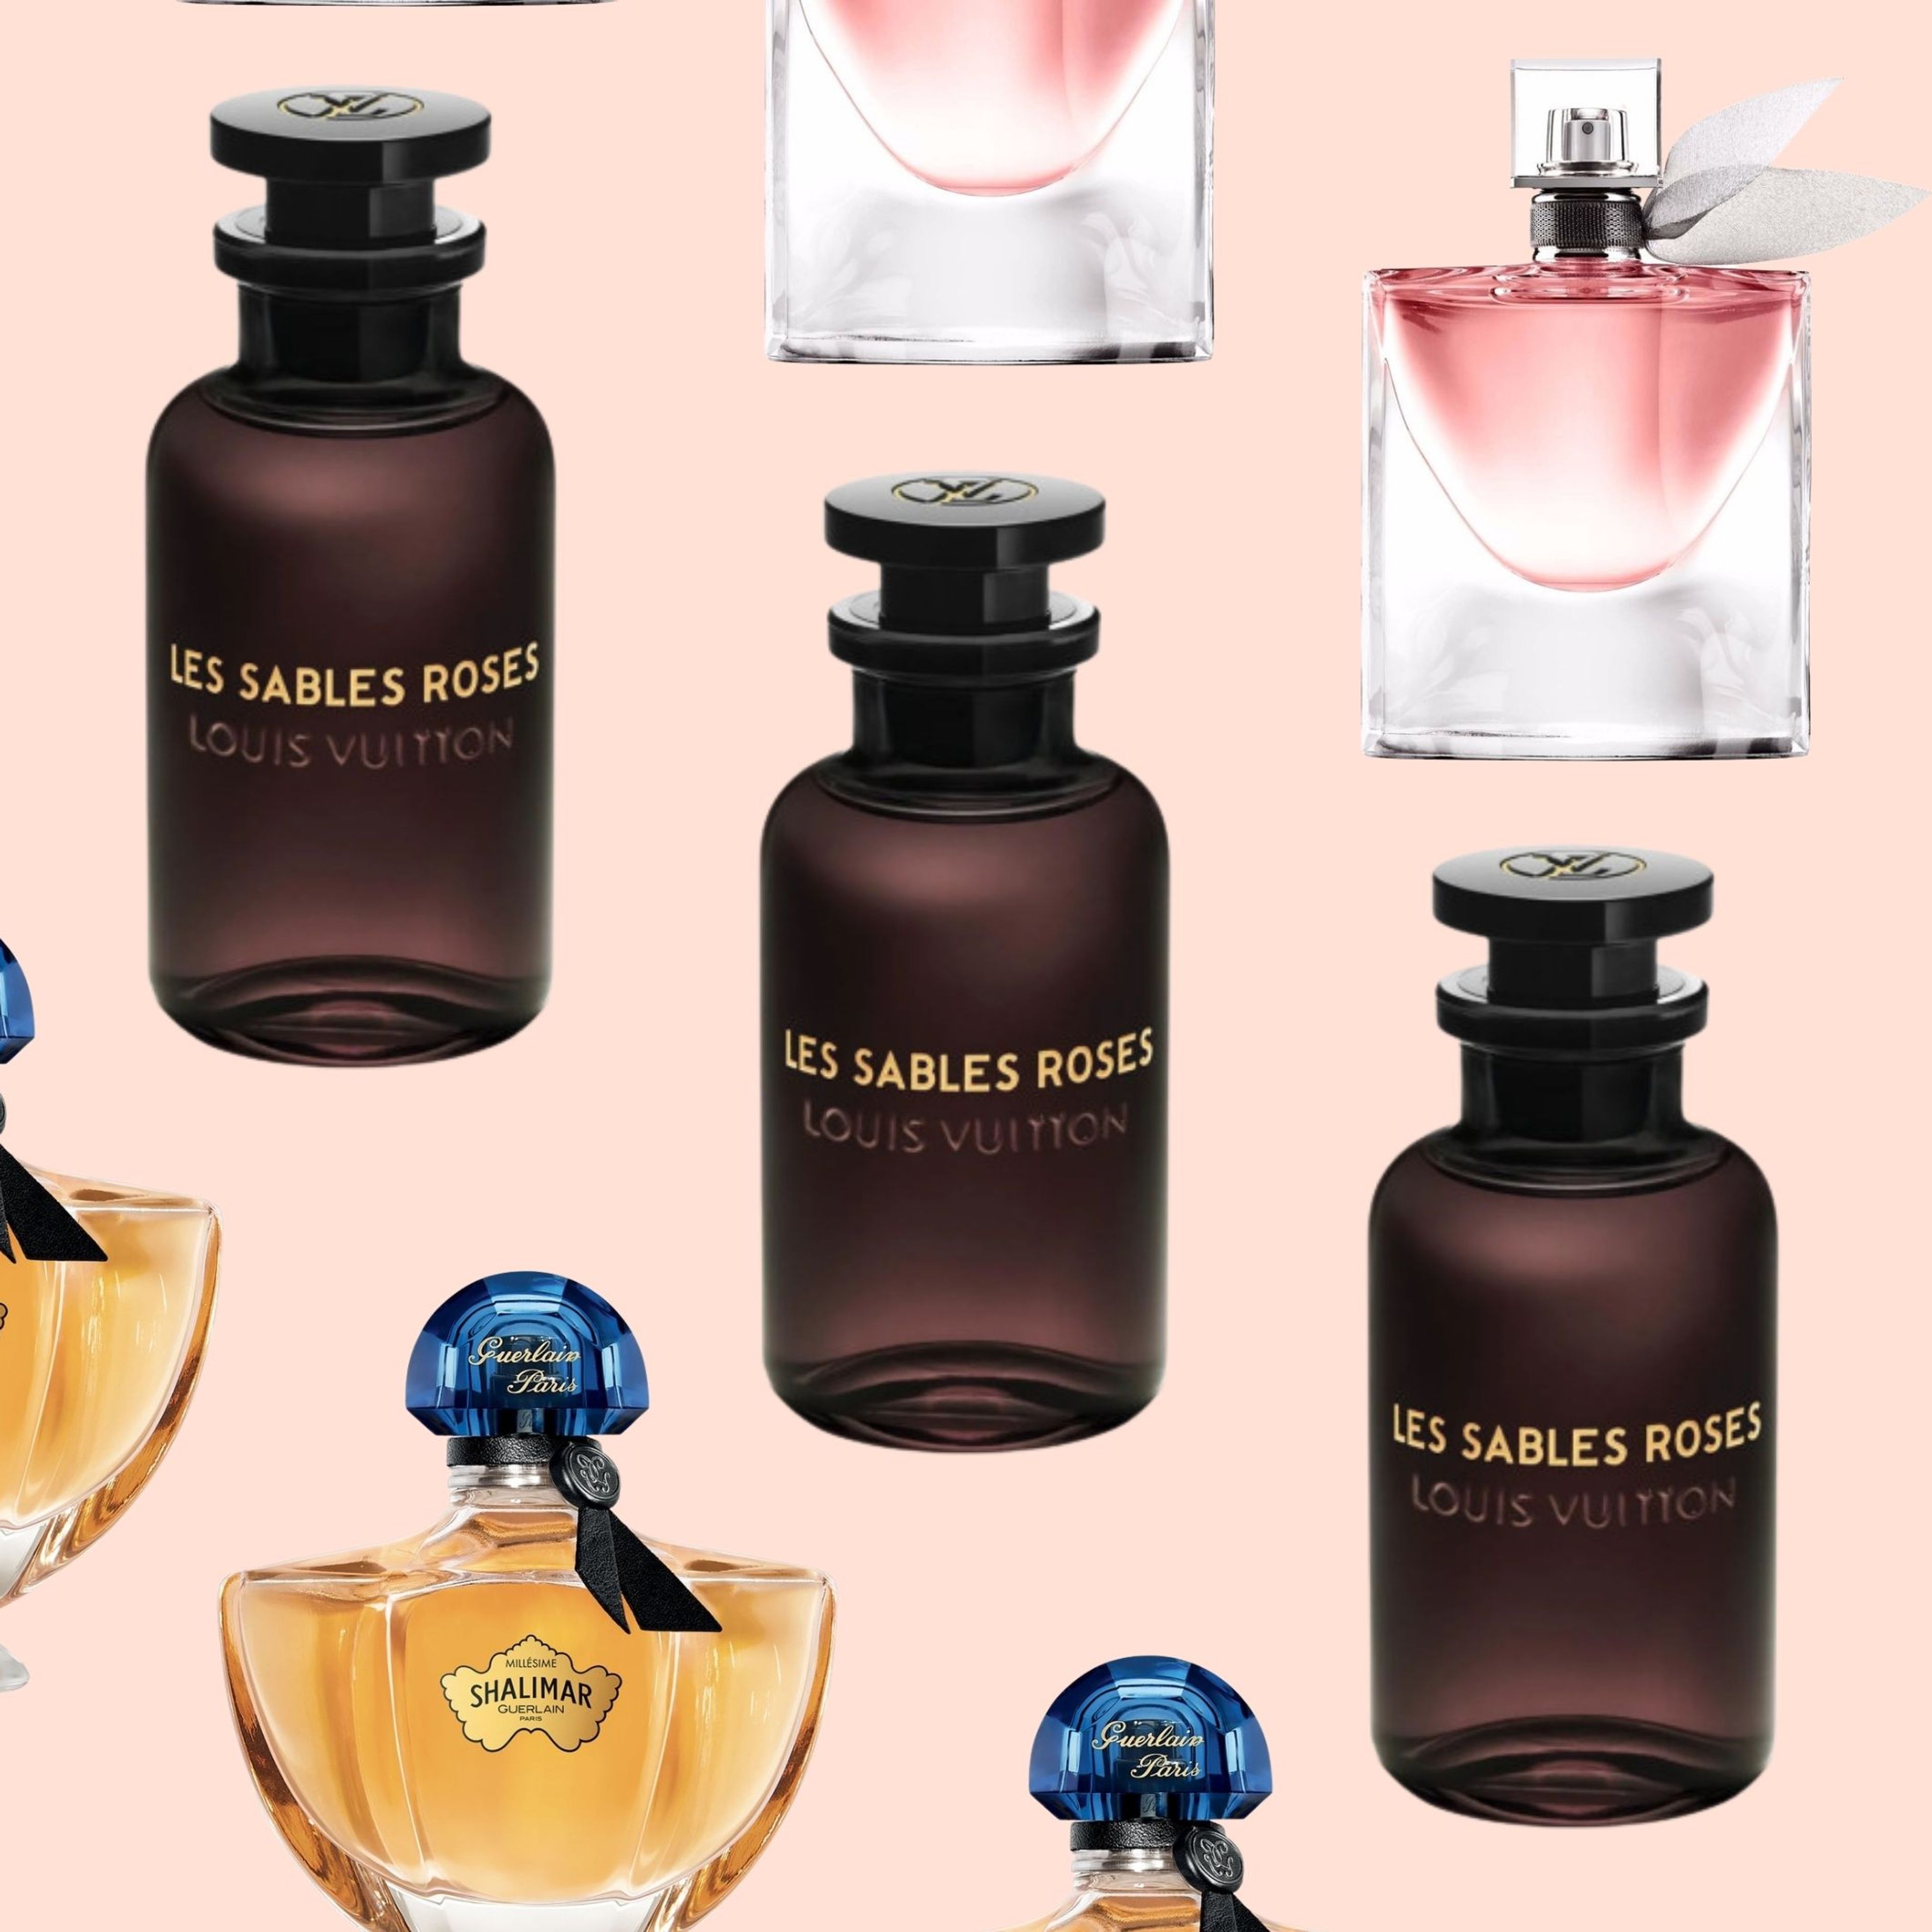 Les meilleurs parfums pour homme de Louis Vuitton